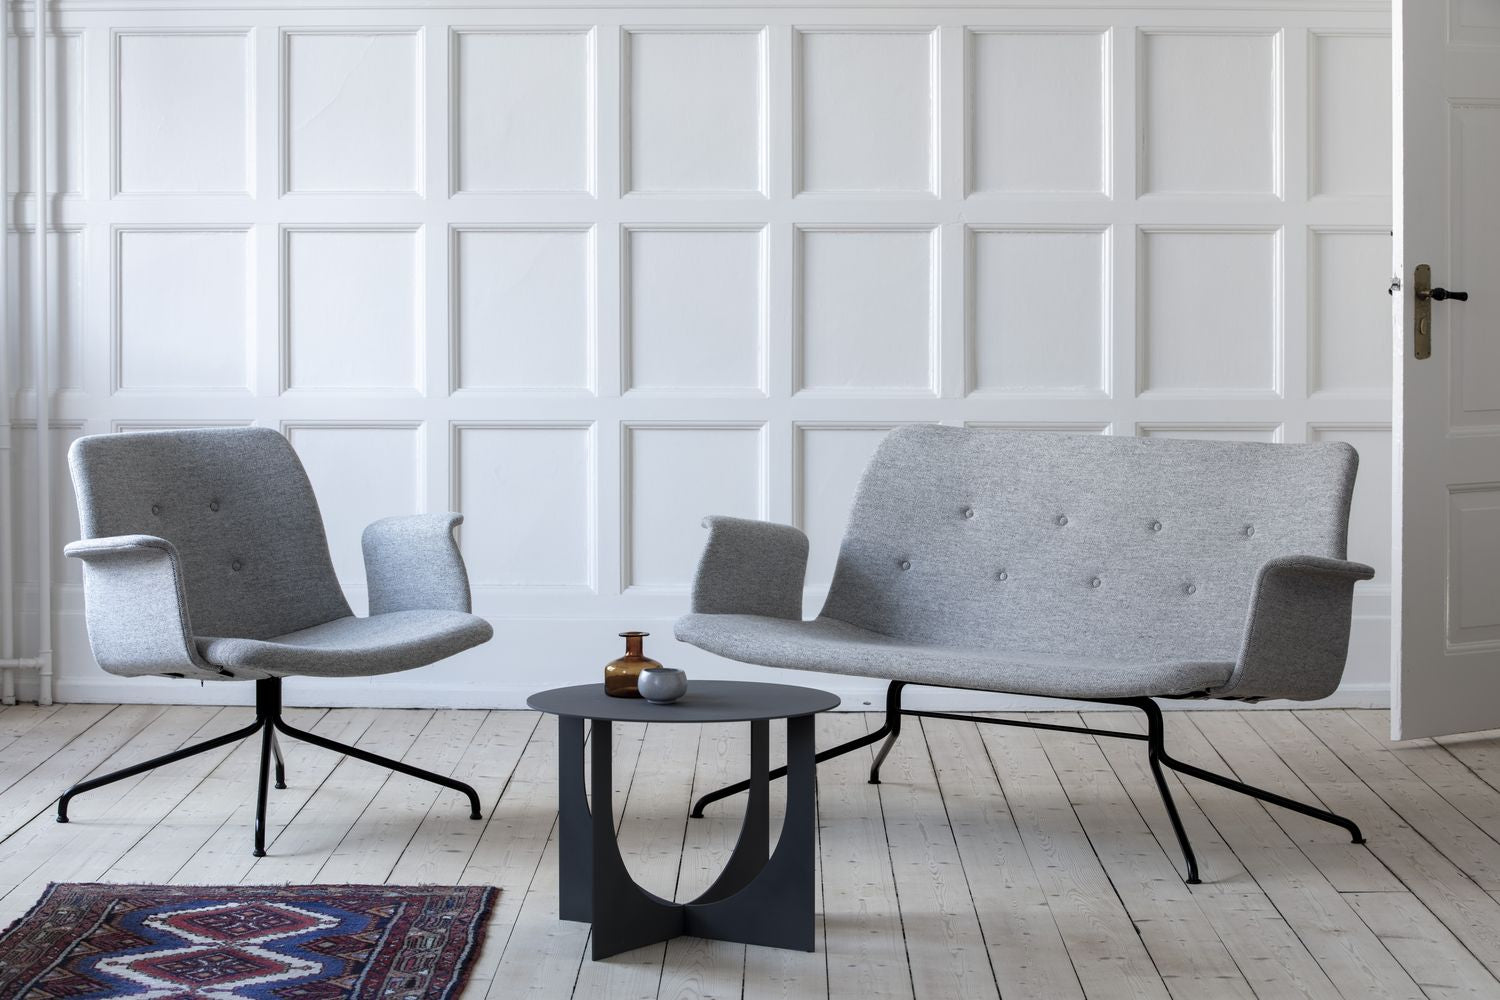 Bent Hansen Primum Lounge Chair uden Armlæn, Sort Stel/Cognac Adrian Læder